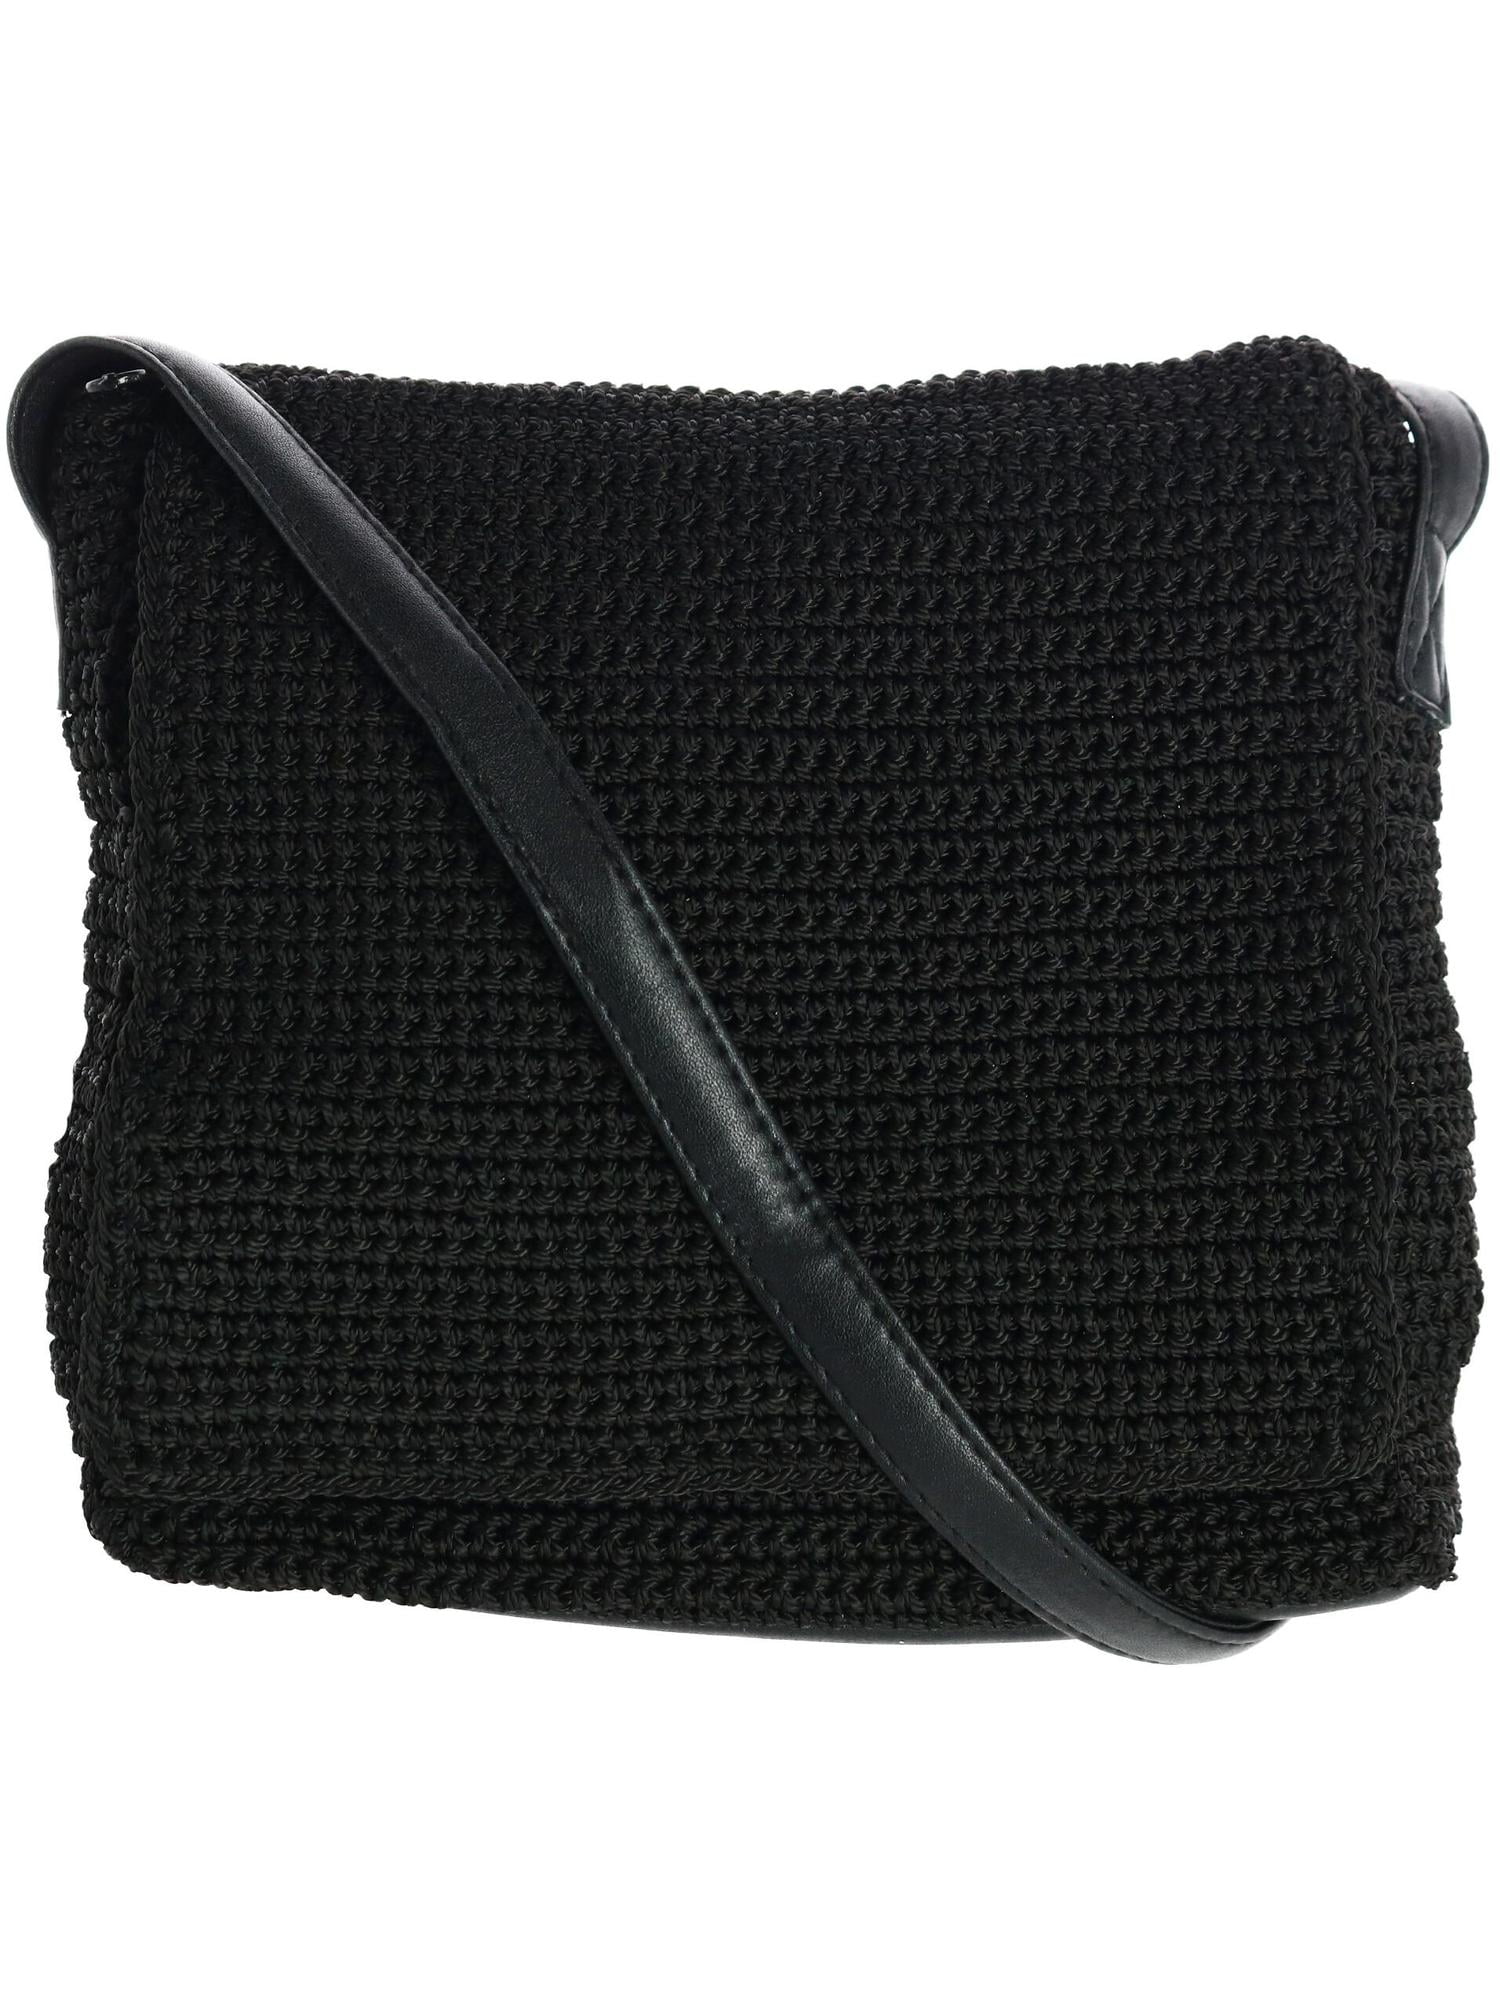 CTM Crochet Crossbody Bag with Front Flap (Women) - Walmart.com